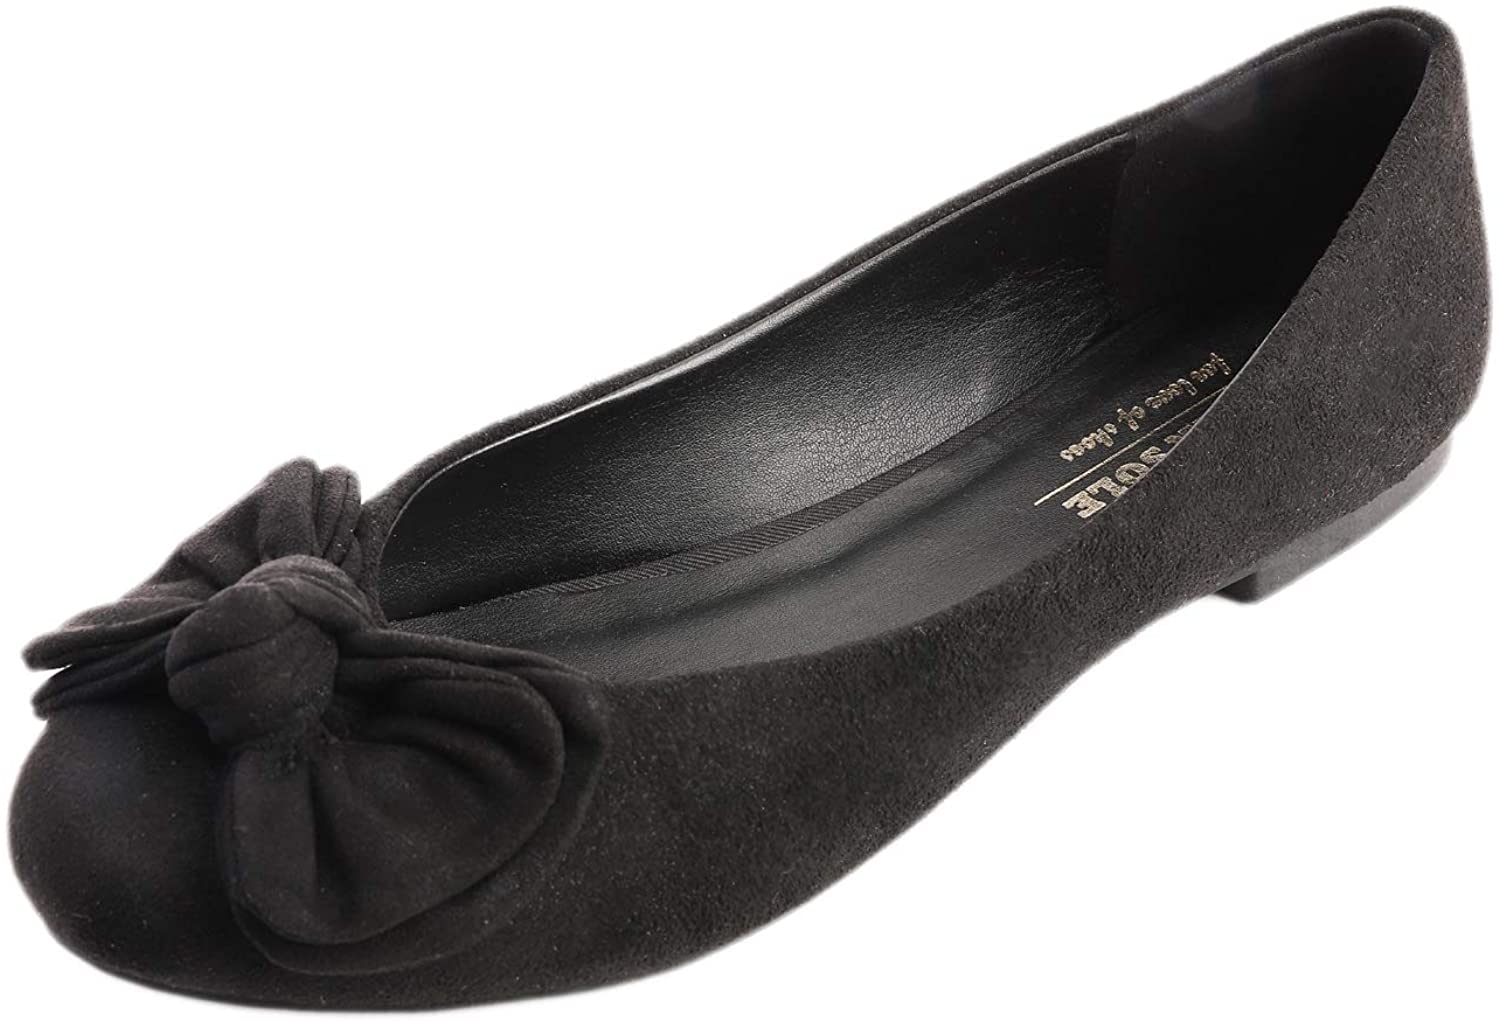 Bout Pointu Chaussures Plates en Maille Respirante à la Mode pour Femmes Feversole Women's Woven Fashion Breathable Pointed Knit Flat Shoes 